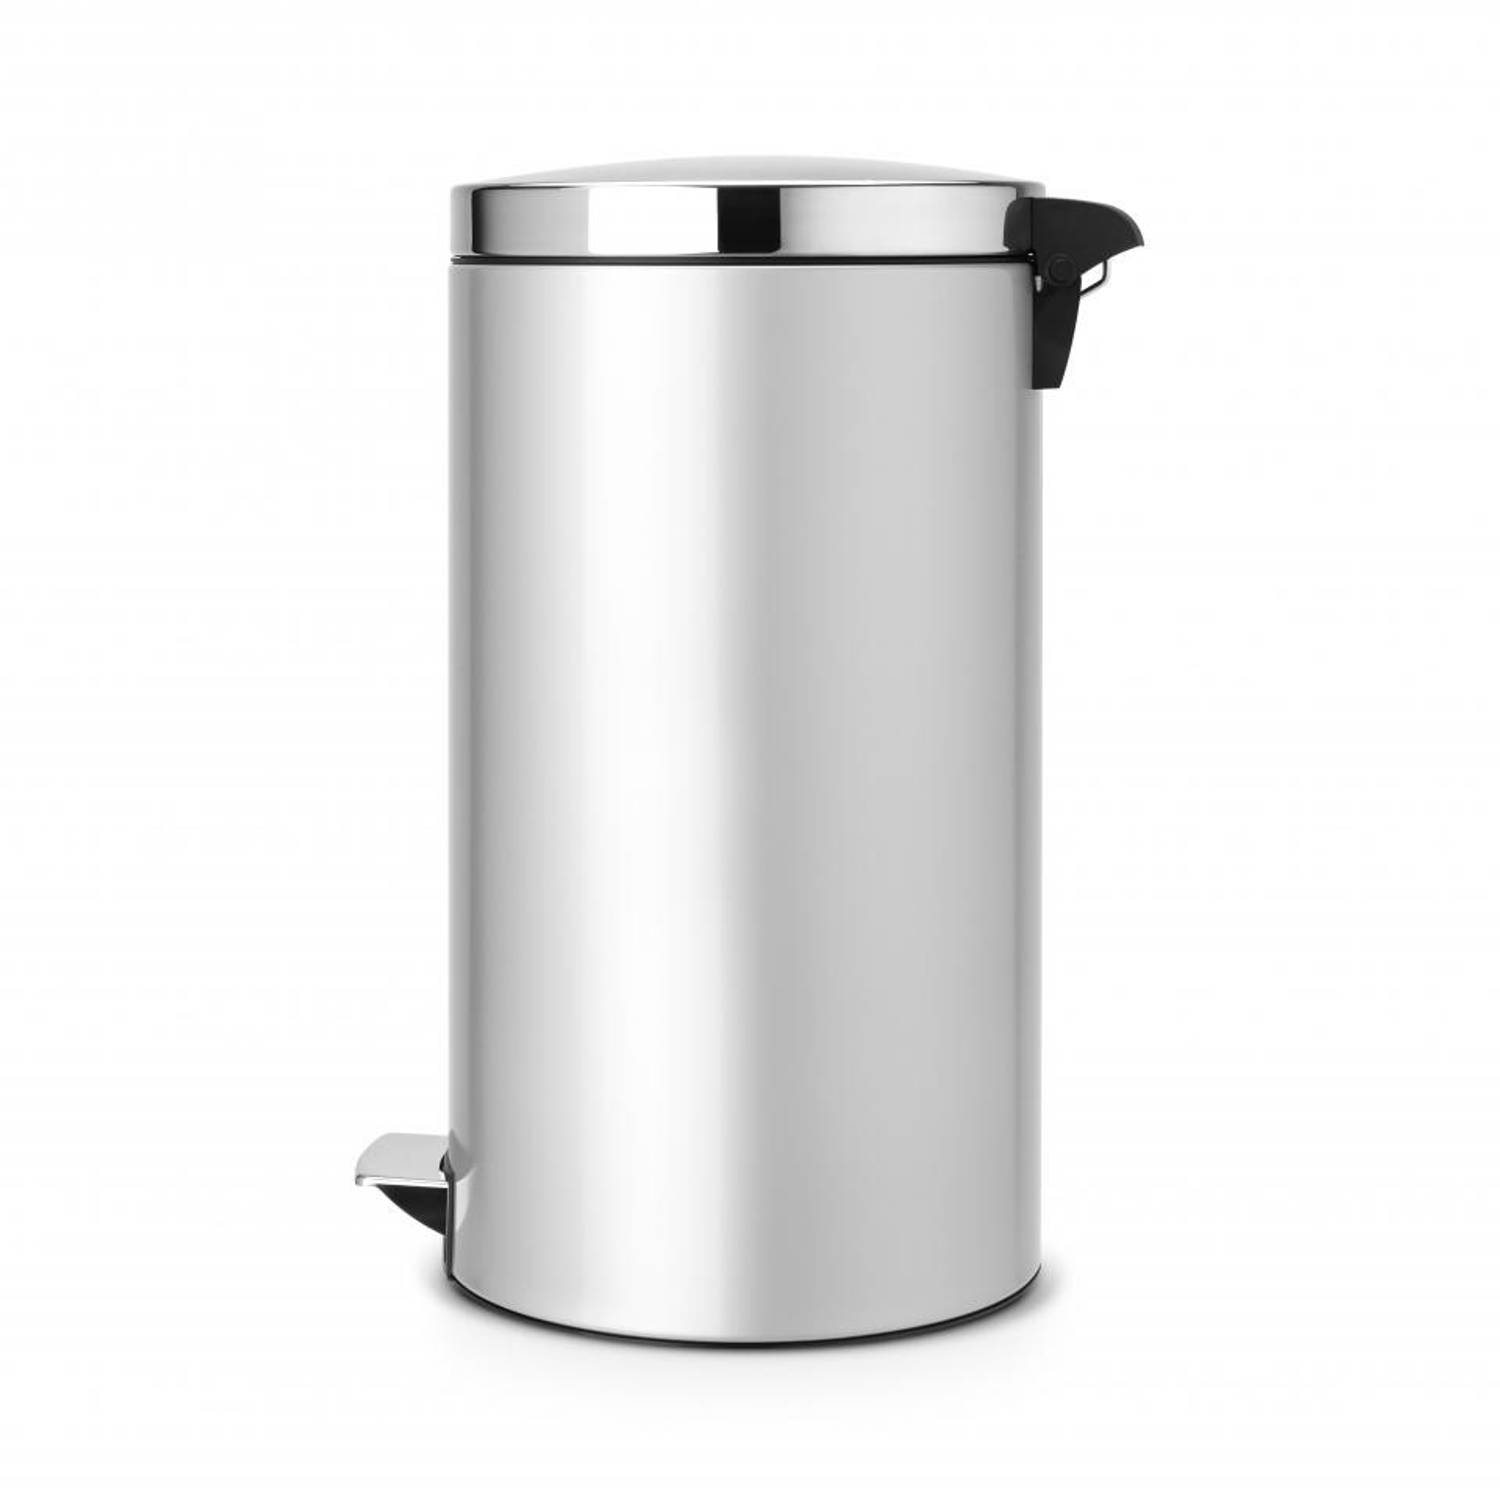 Aanmoediging pols hun Brabantia Silent pedaalemmer 45 liter met kunststof binnenemmer - Metallic  Grey / Brilliant Steel | Blokker